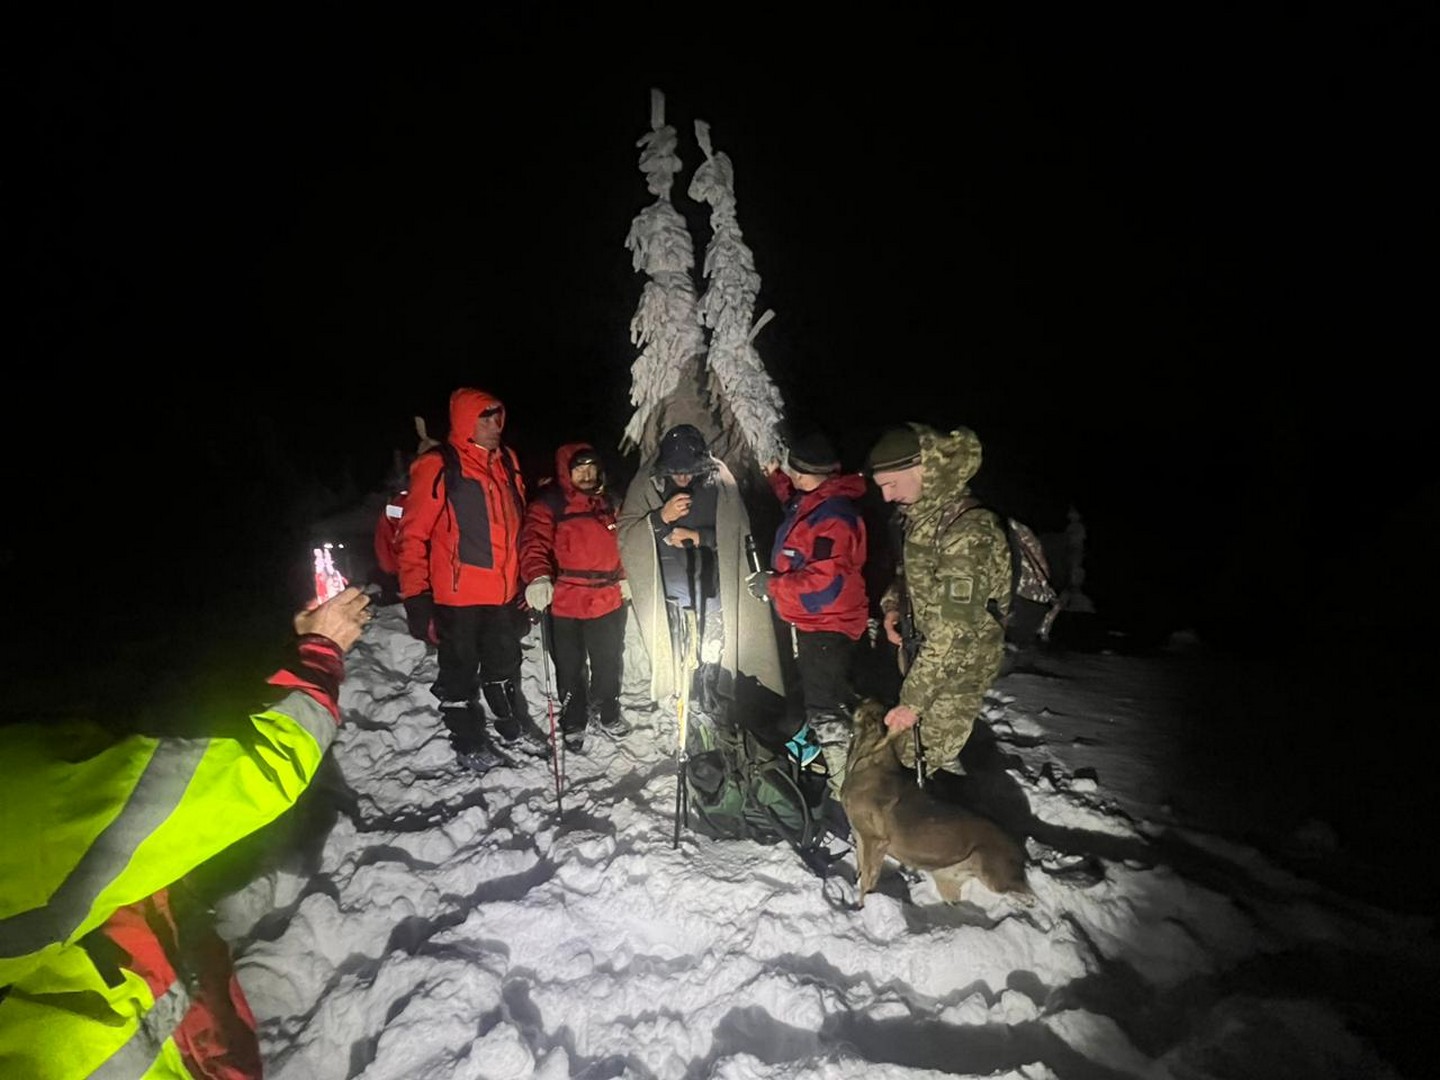 "Турист" із Дніпра, якого змерзлим знайшли в горах, виявився "ухилянтом" що прямував до Румунії (ФОТО, ВІДЕО)